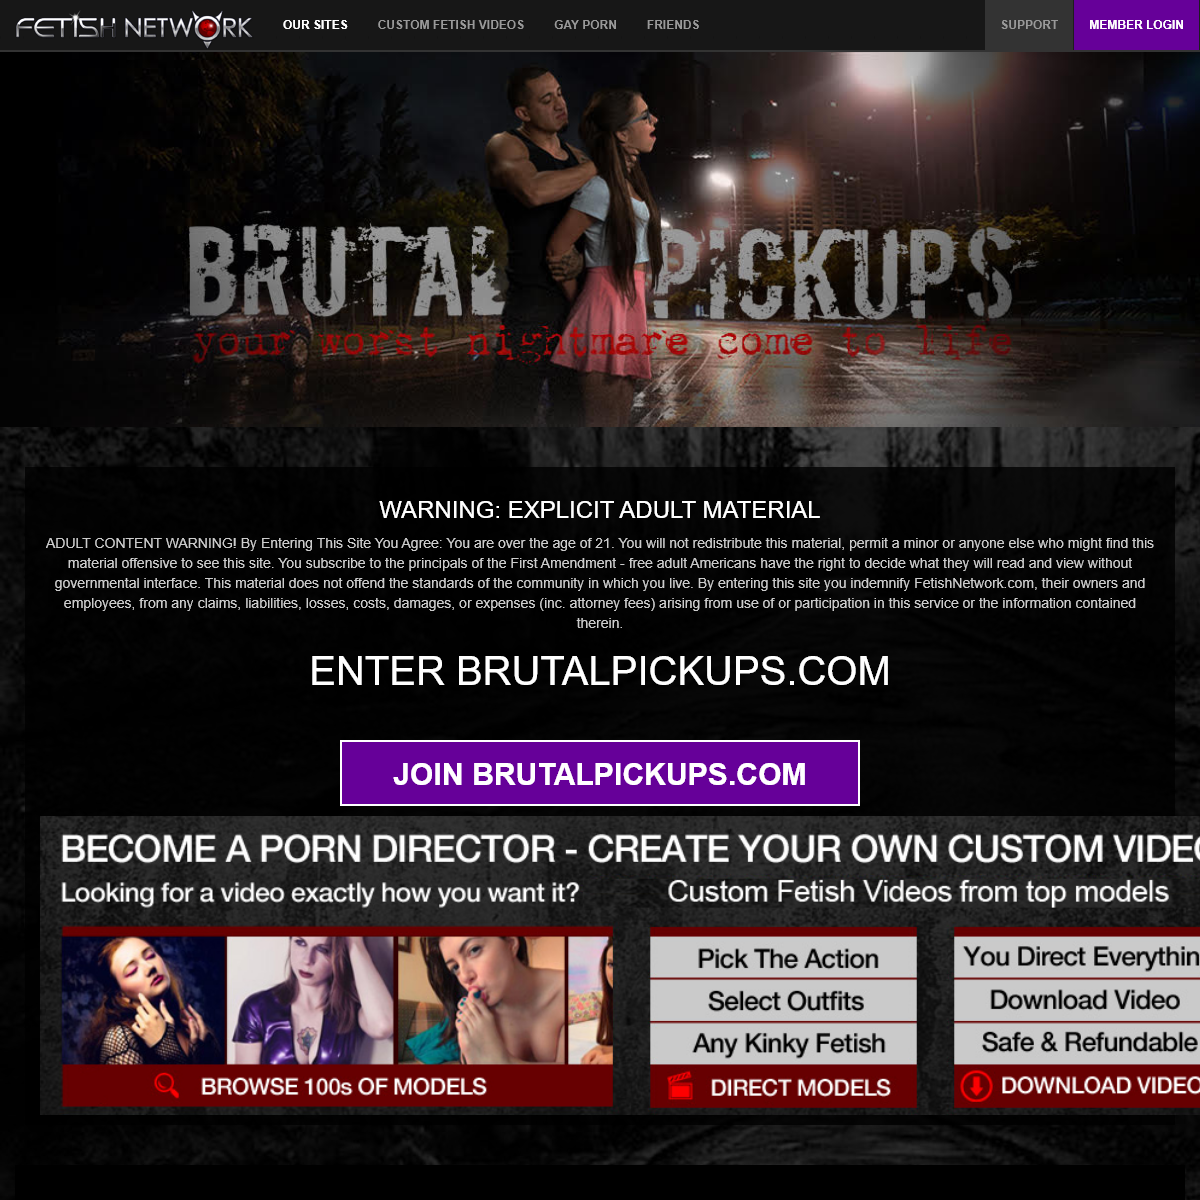 A complete backup of www.brutalpickups.com